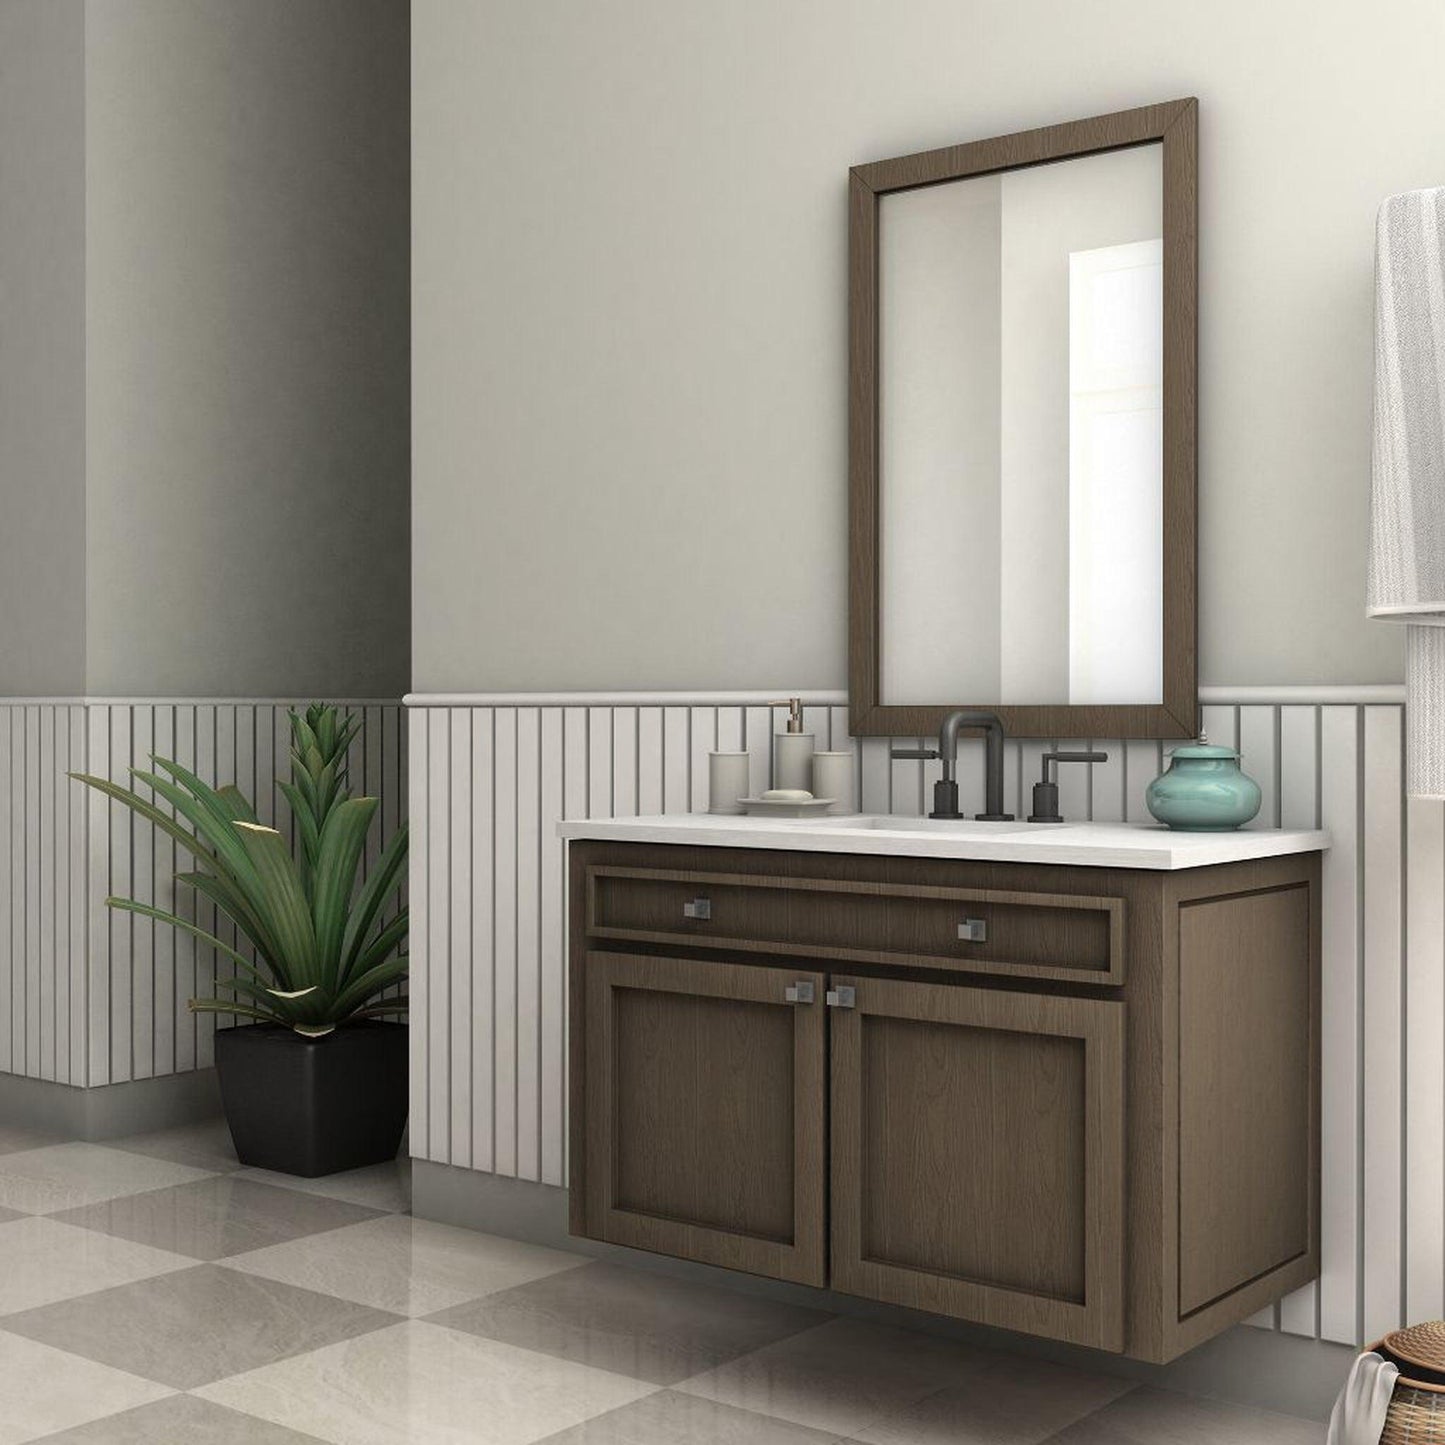 ZLINE El Dorado Widespread 1.5 GPM Matte Black Bathroom Faucet With Drain